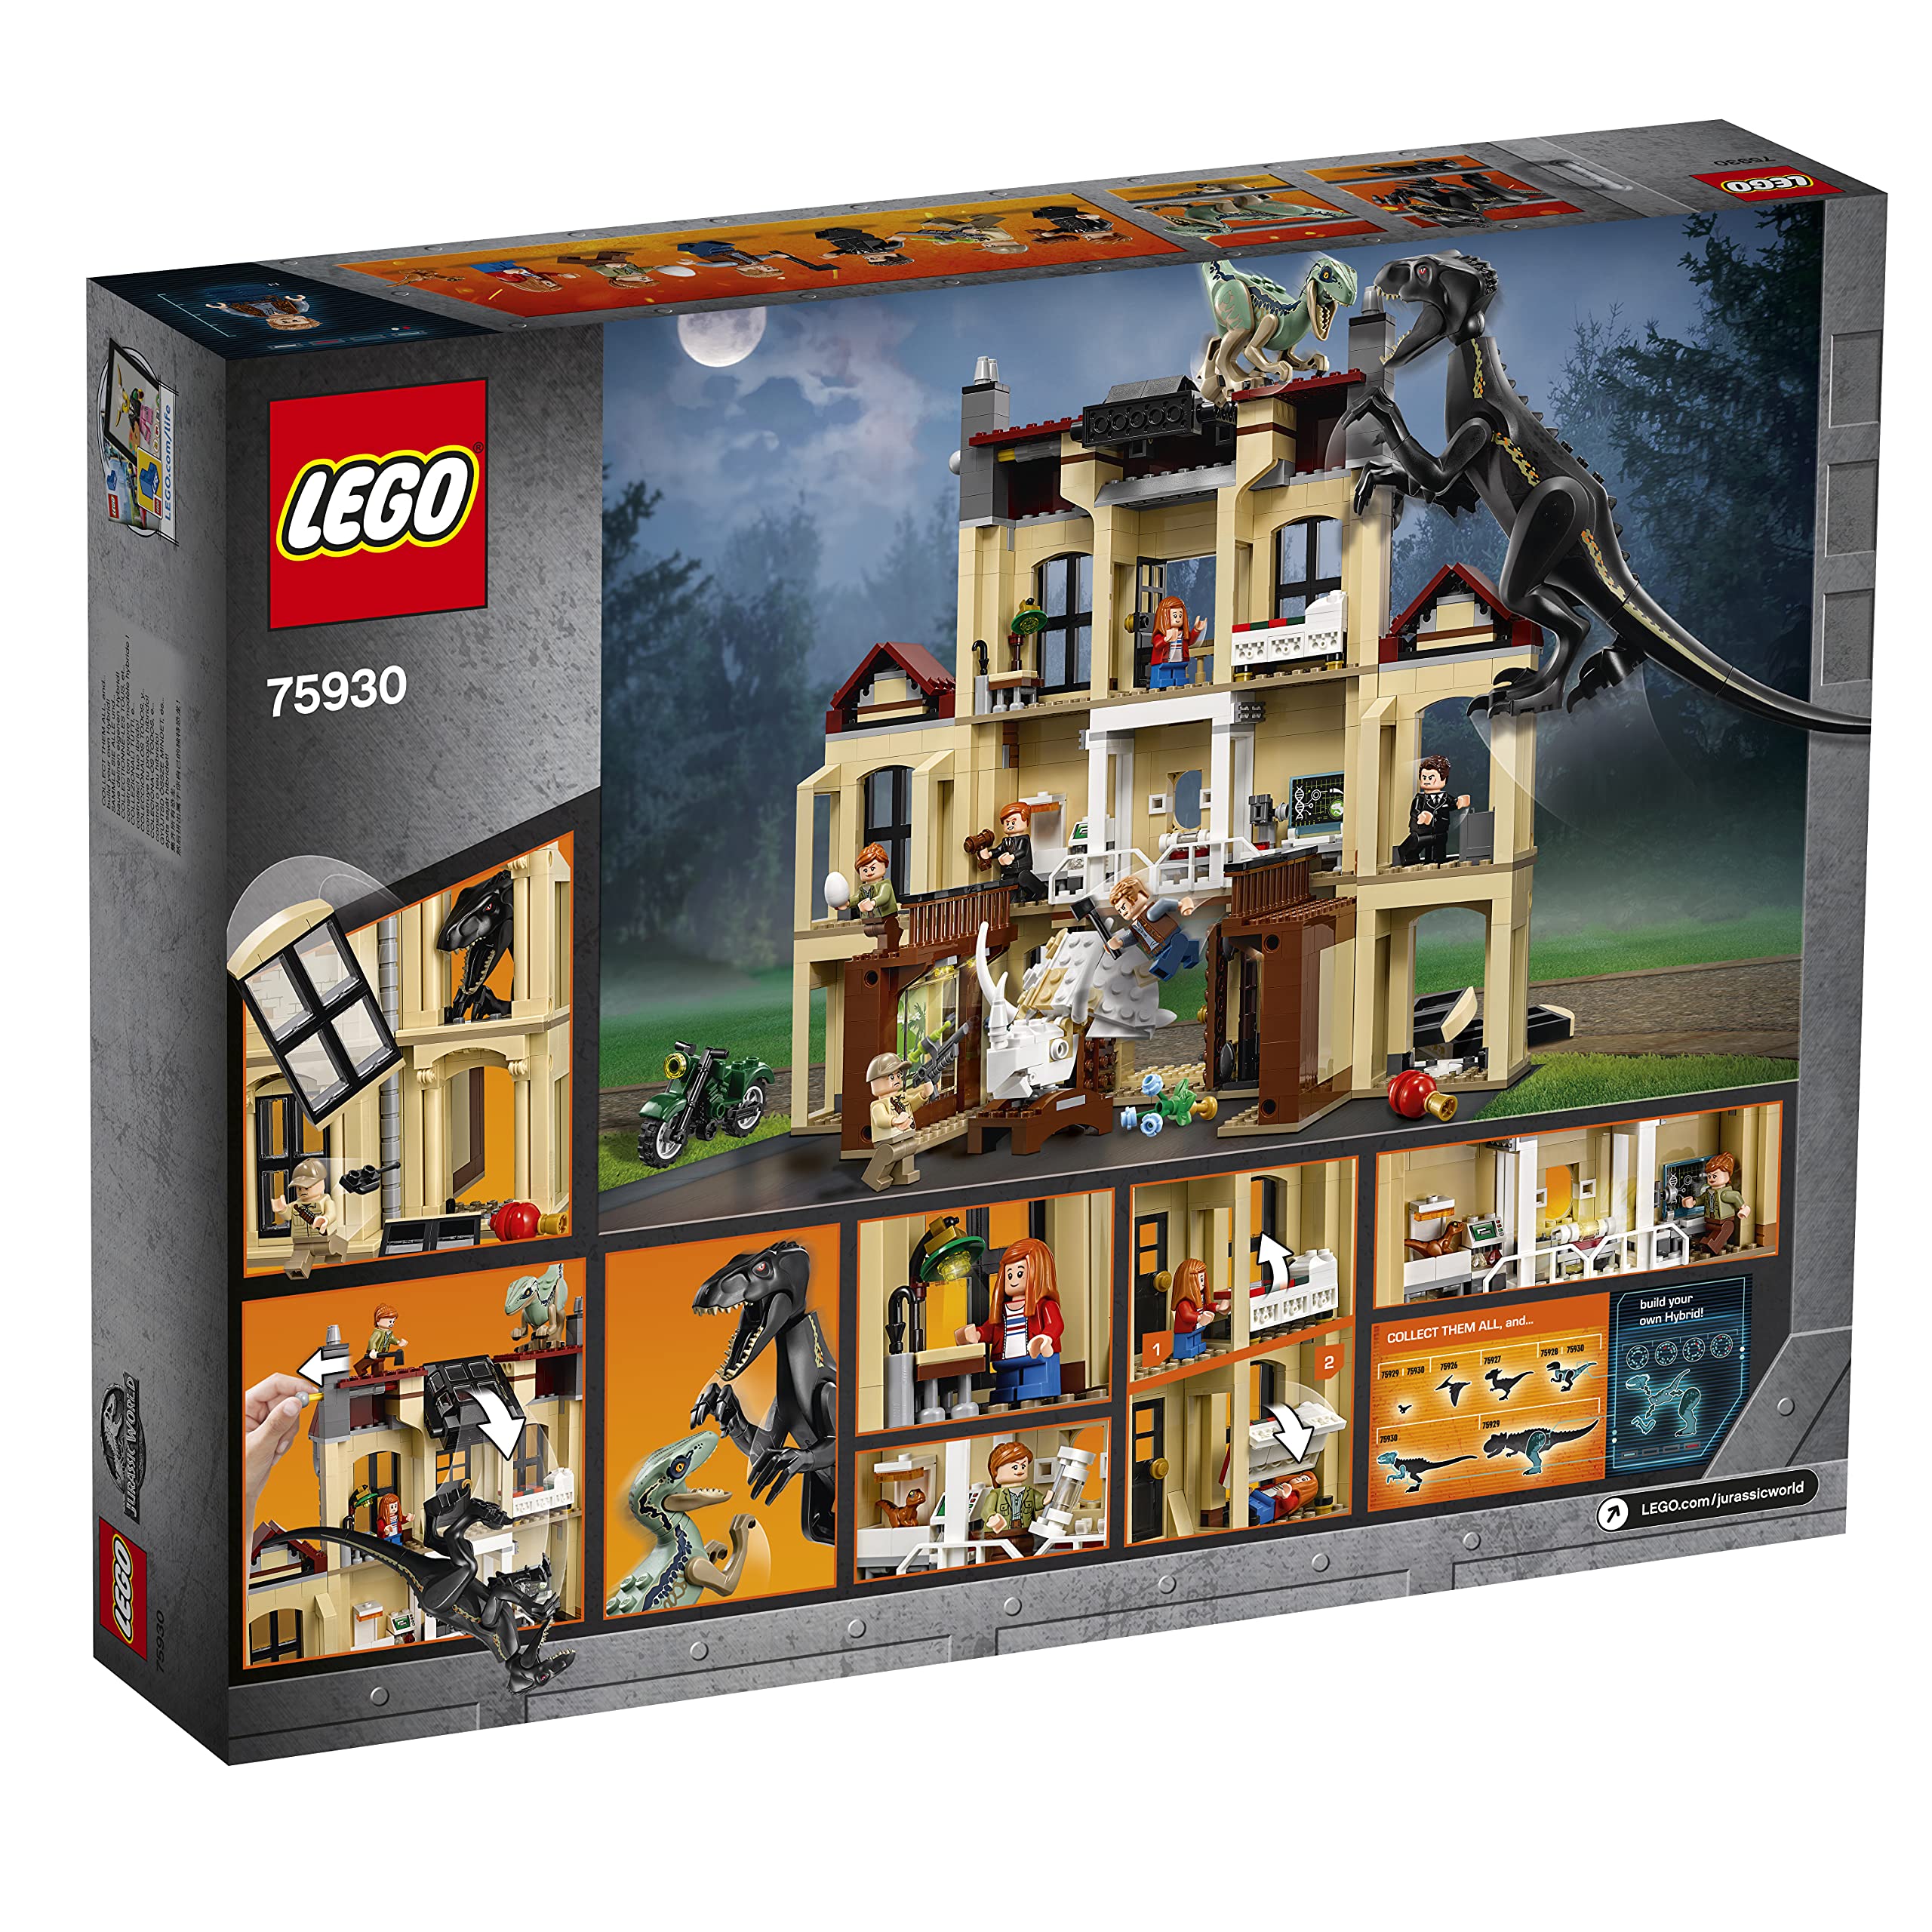 Lego Jurassic World's Indoraptor Verwüstung Lockw – Structure 75930 Toy for Boys & Girls